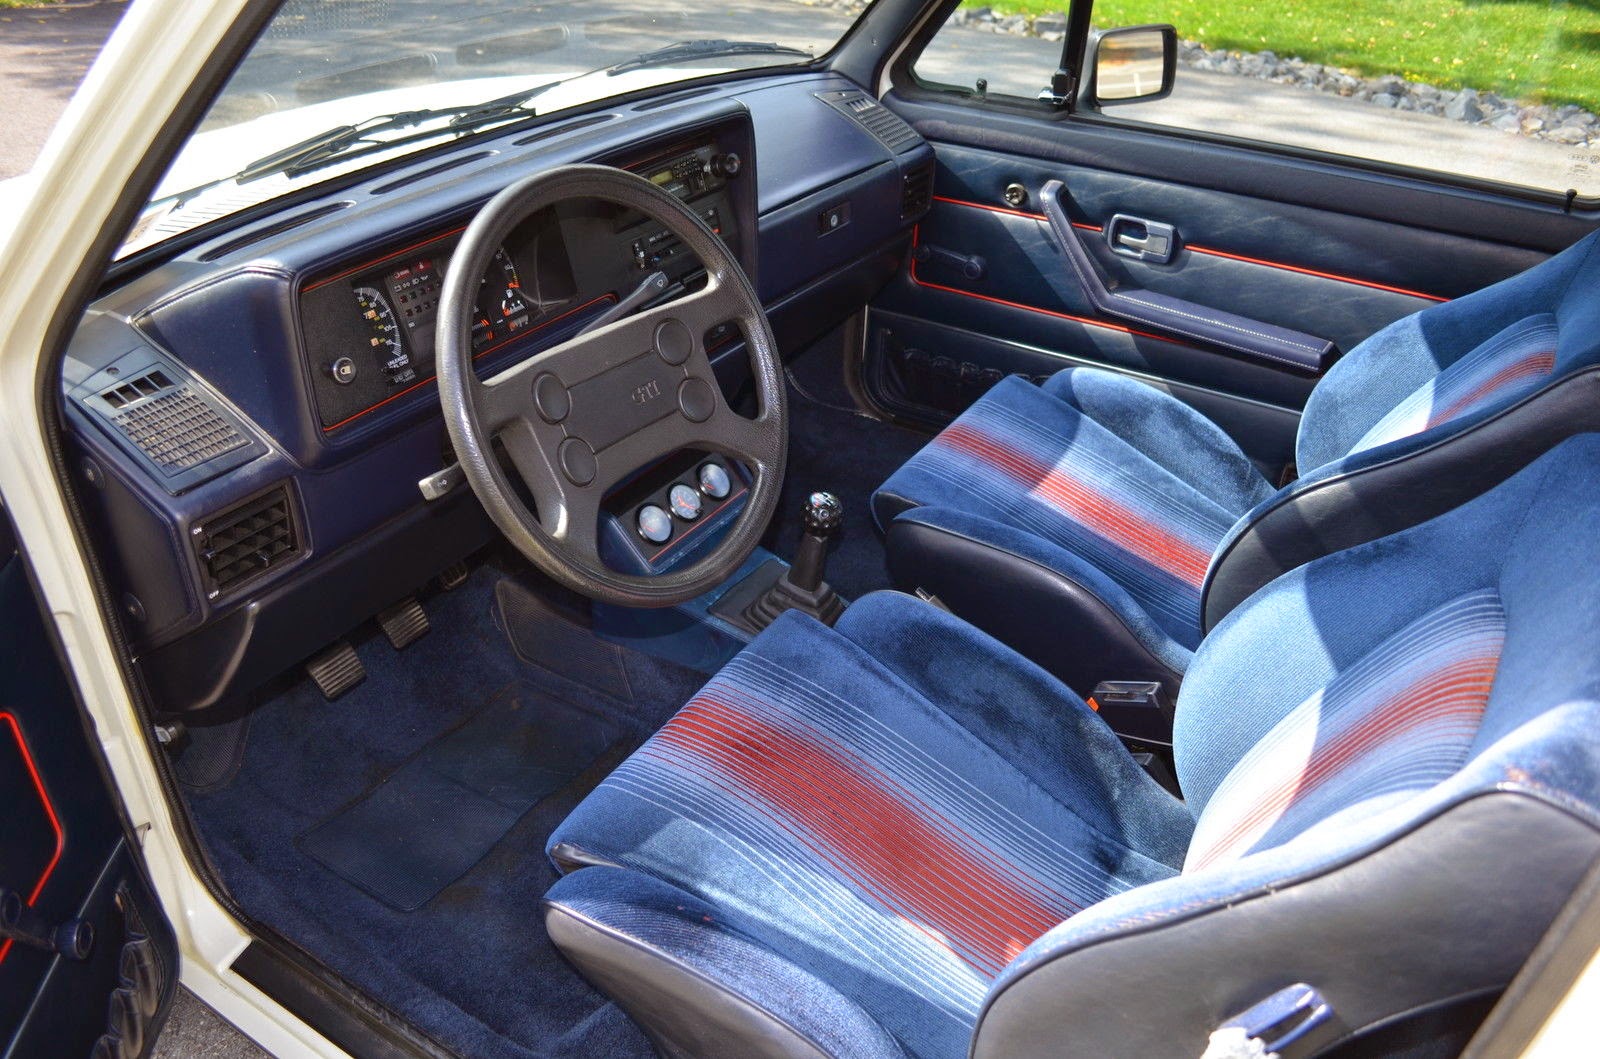 1984 Volkswagen Rabbit GTI Great Original Condition